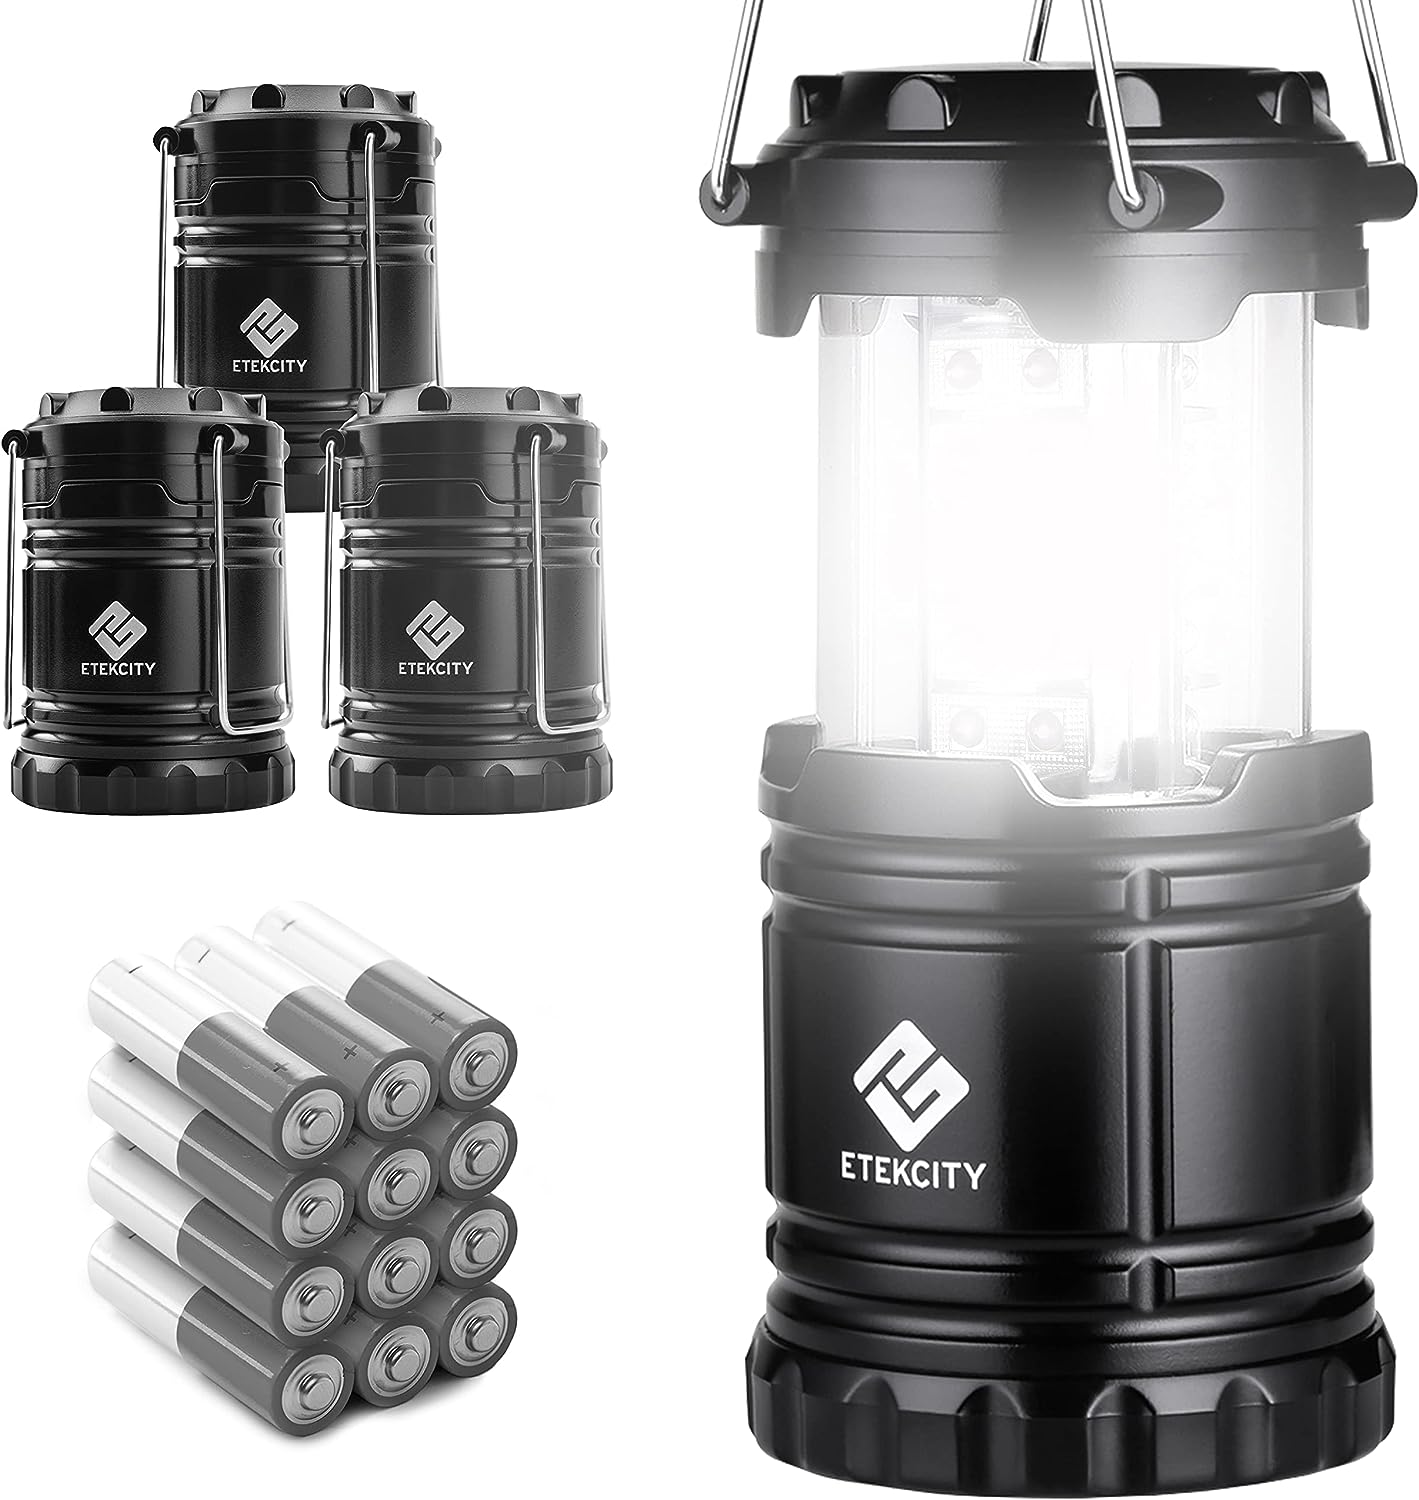 چراغ های فانوسی کمپینگ مدل Etekcity Lantern Camping - ارسال 10 الی 15 روز کاری